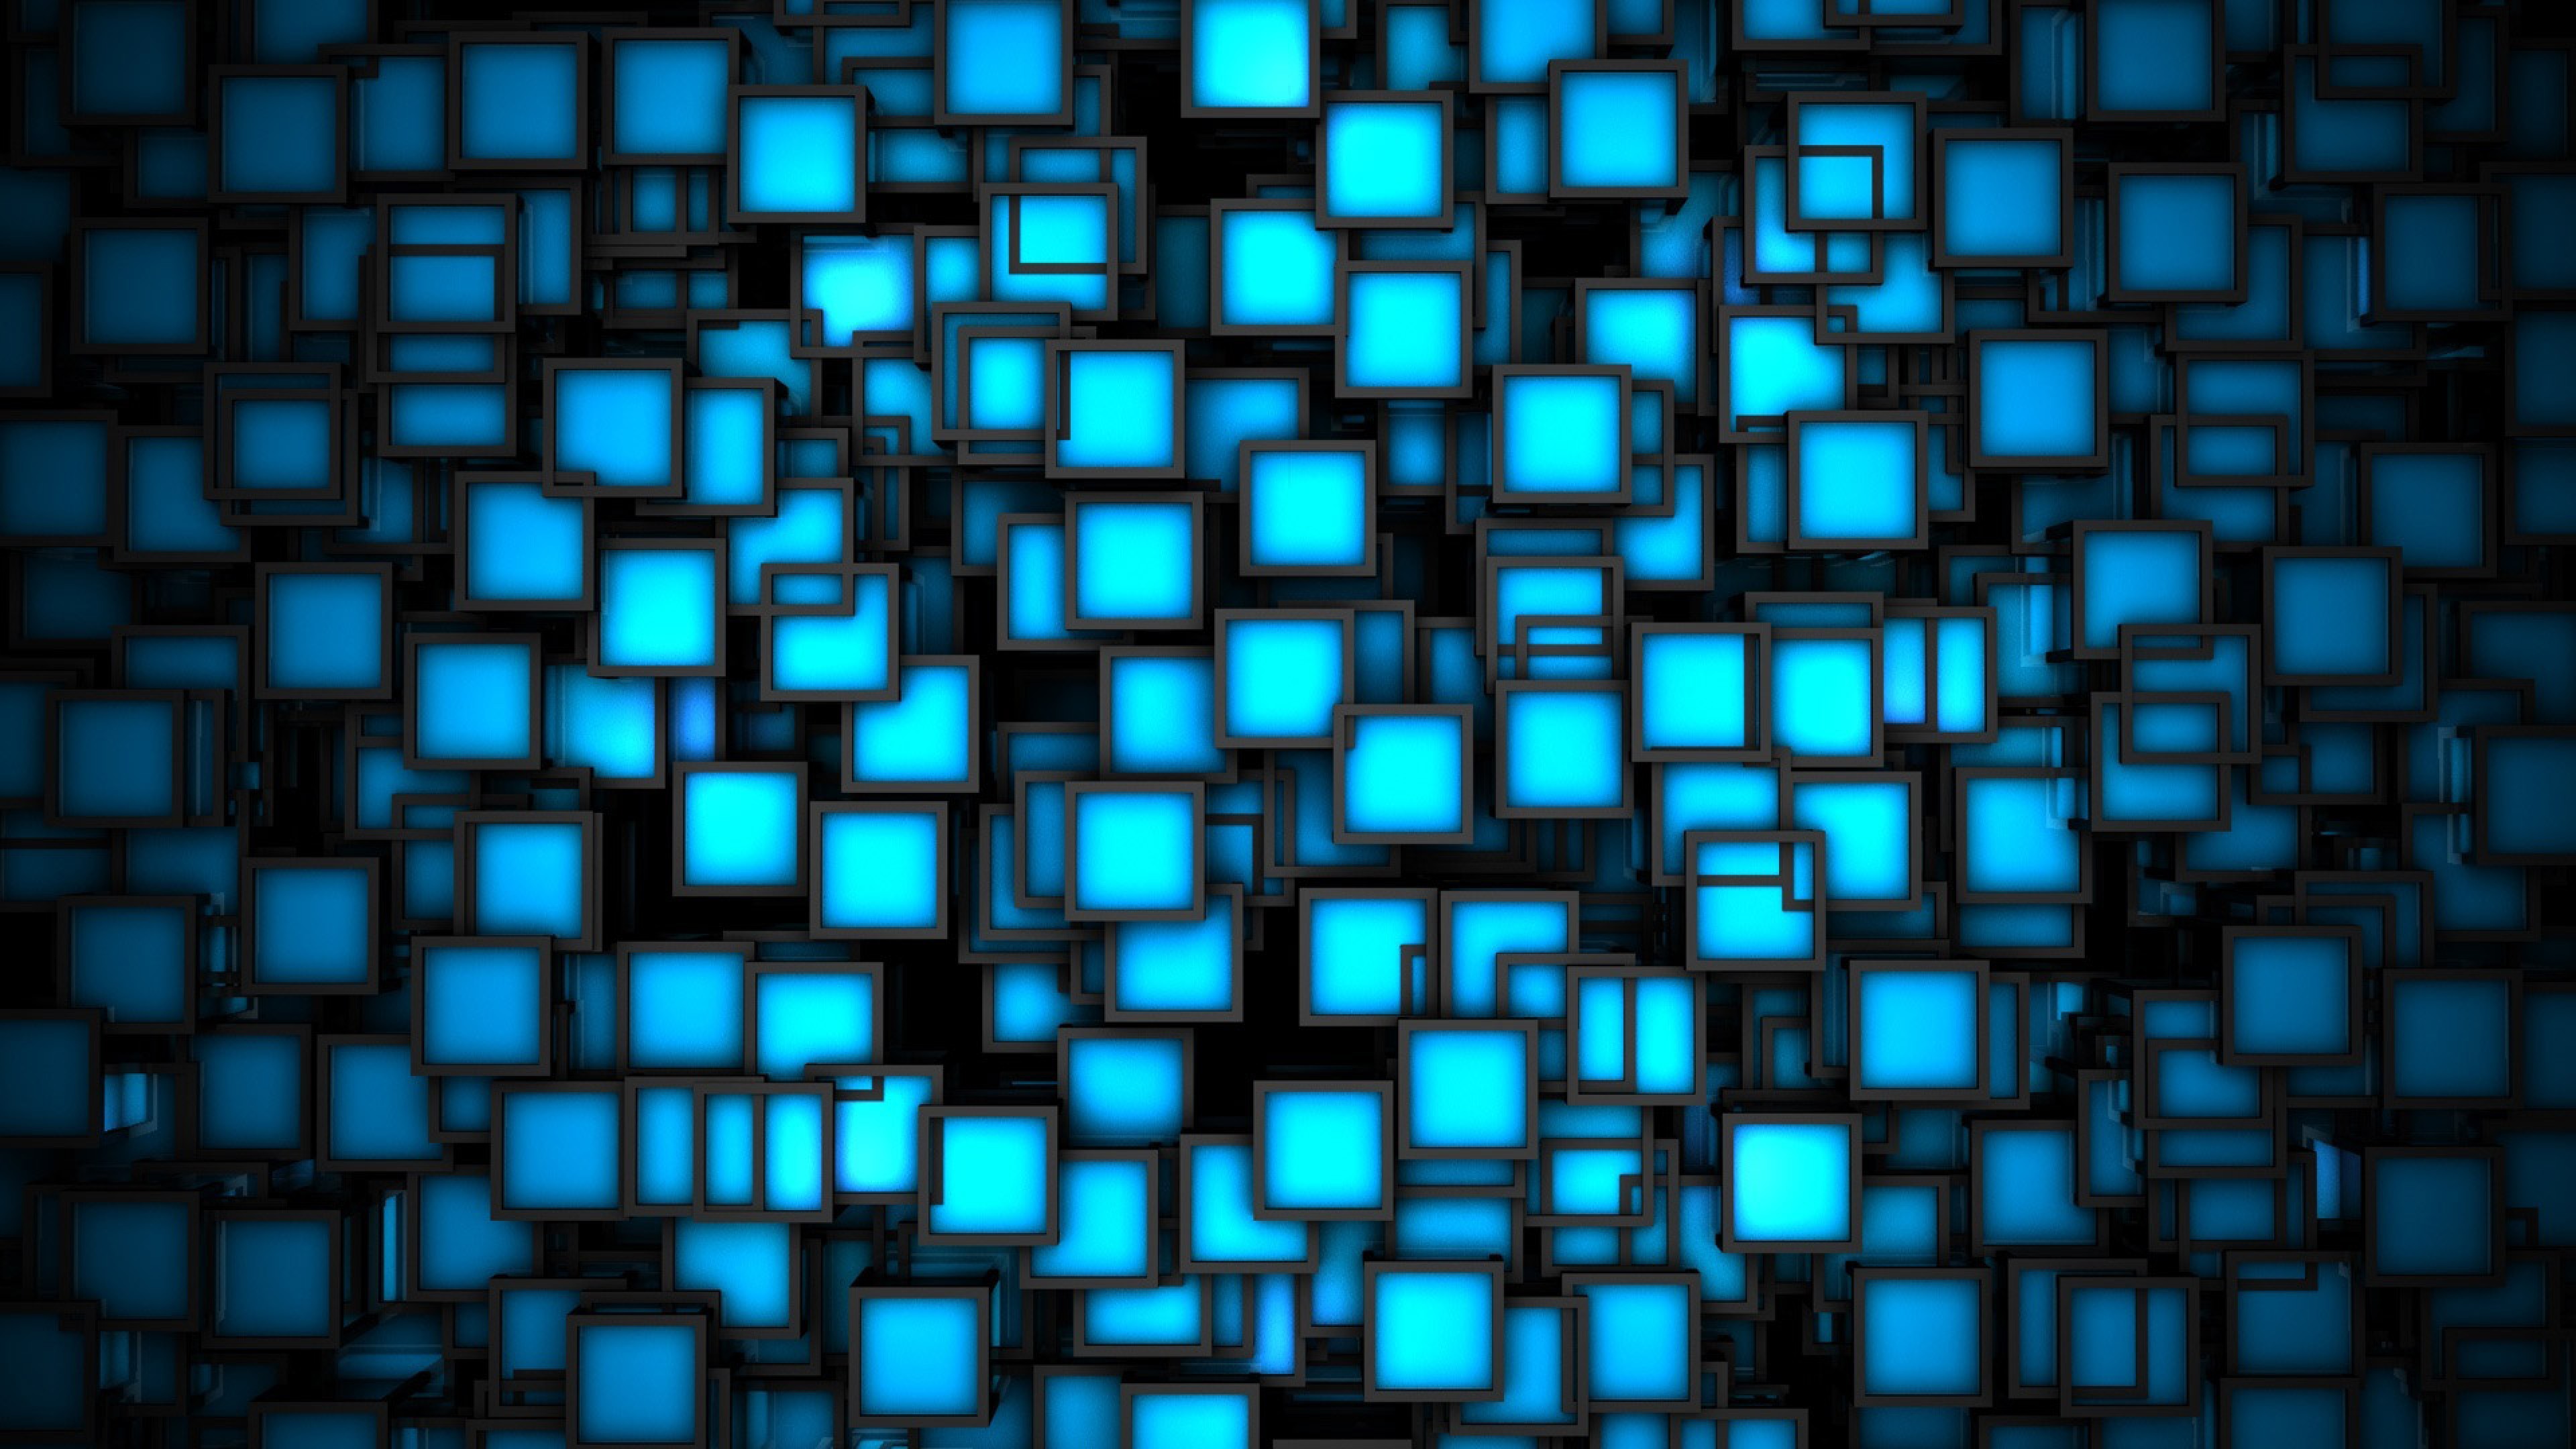 Azul y negro. Абстракция квадраты. Фон квадратики. Абстракция из квадратов. Компьютерный фон.